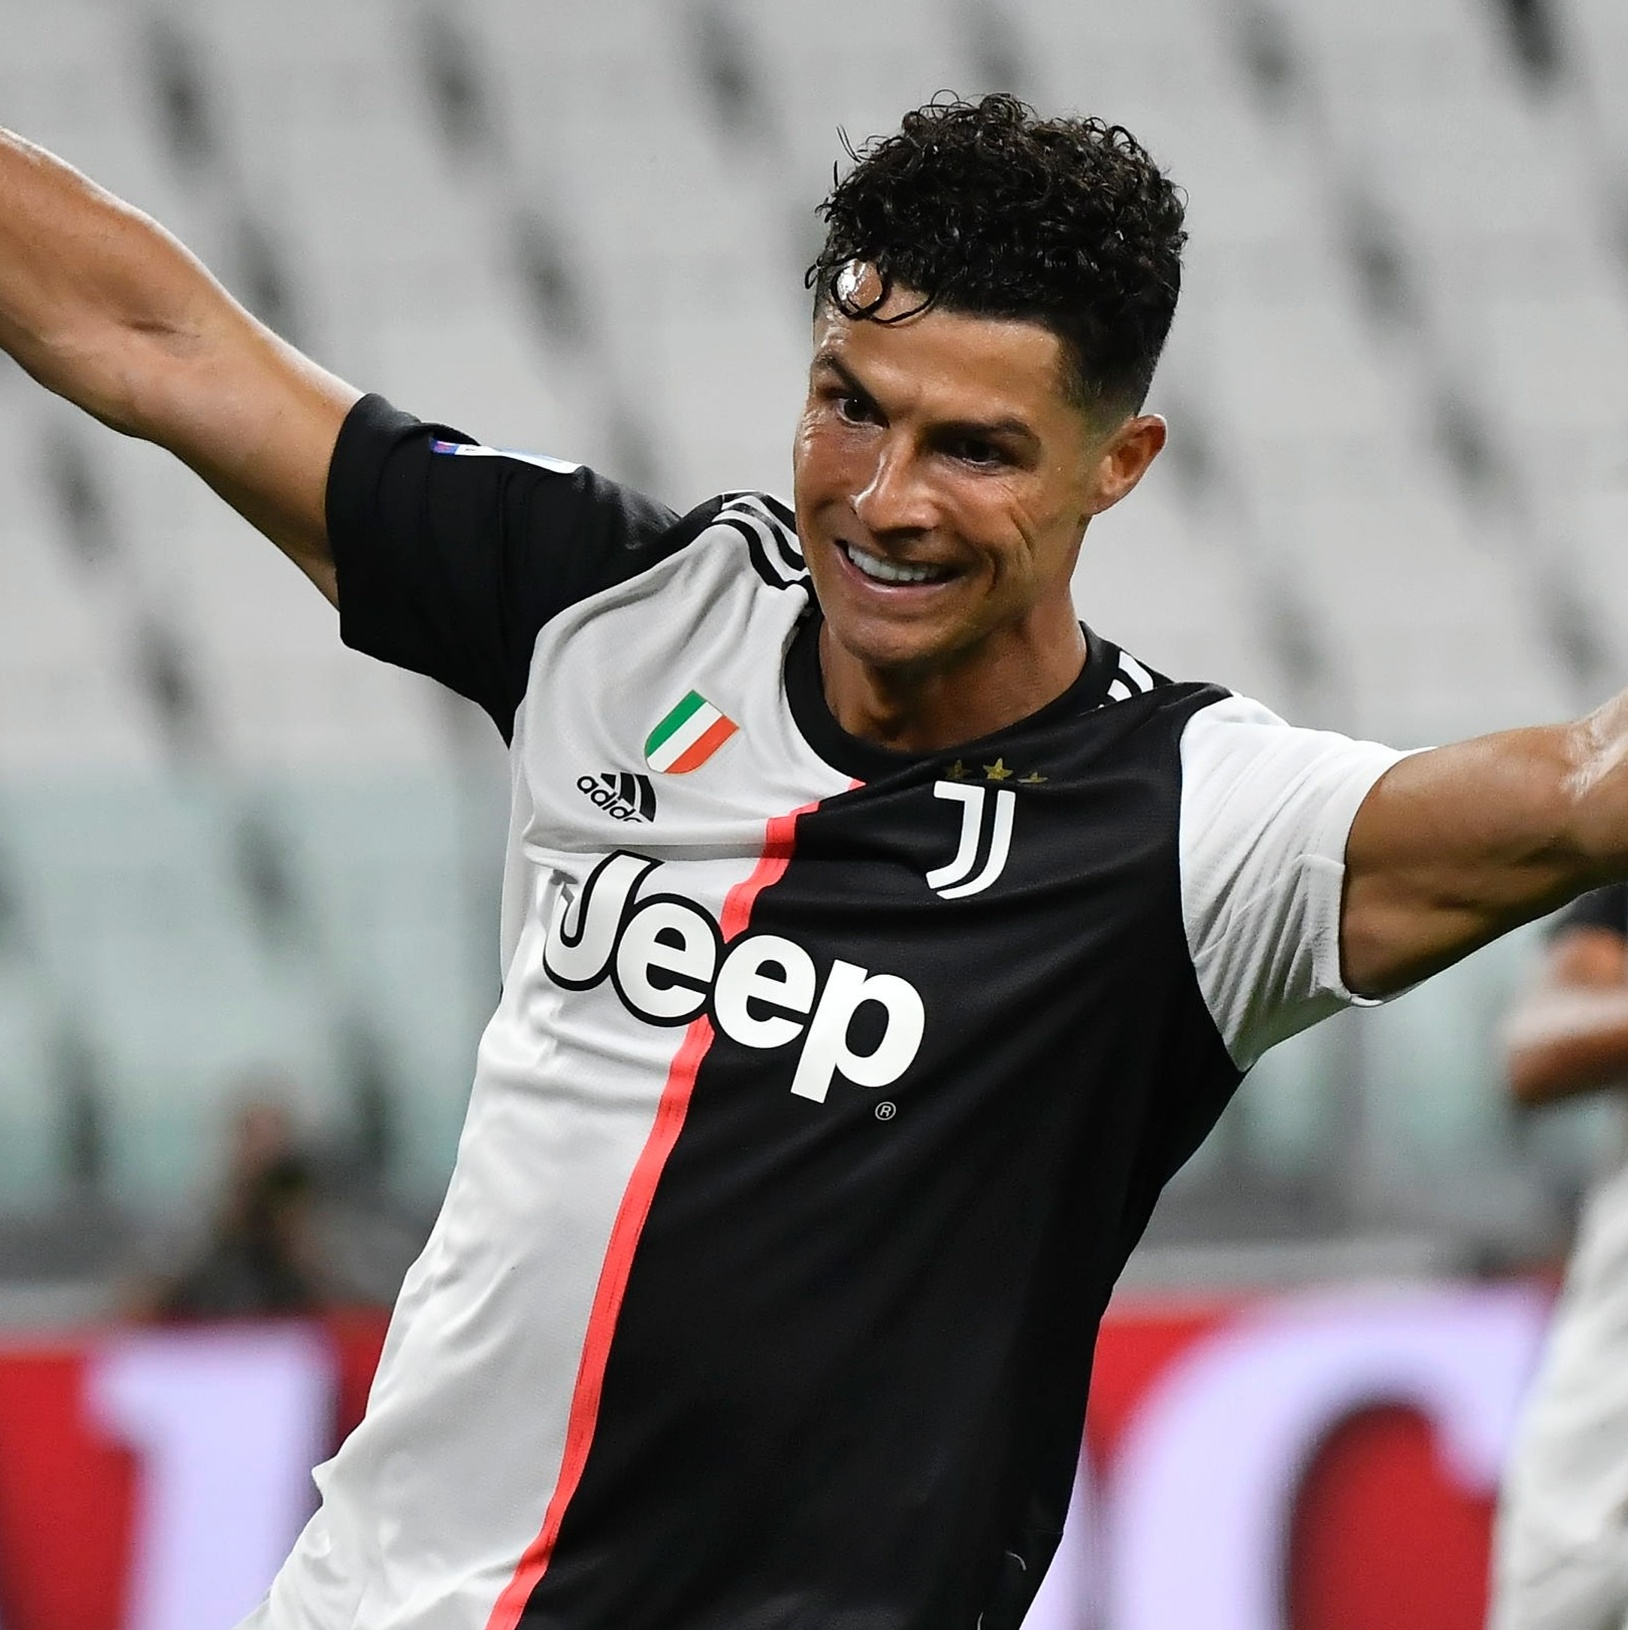 Juventus tenta o 8º título italiano seguido, mas vê adversários reforçados  - Gazeta Esportiva